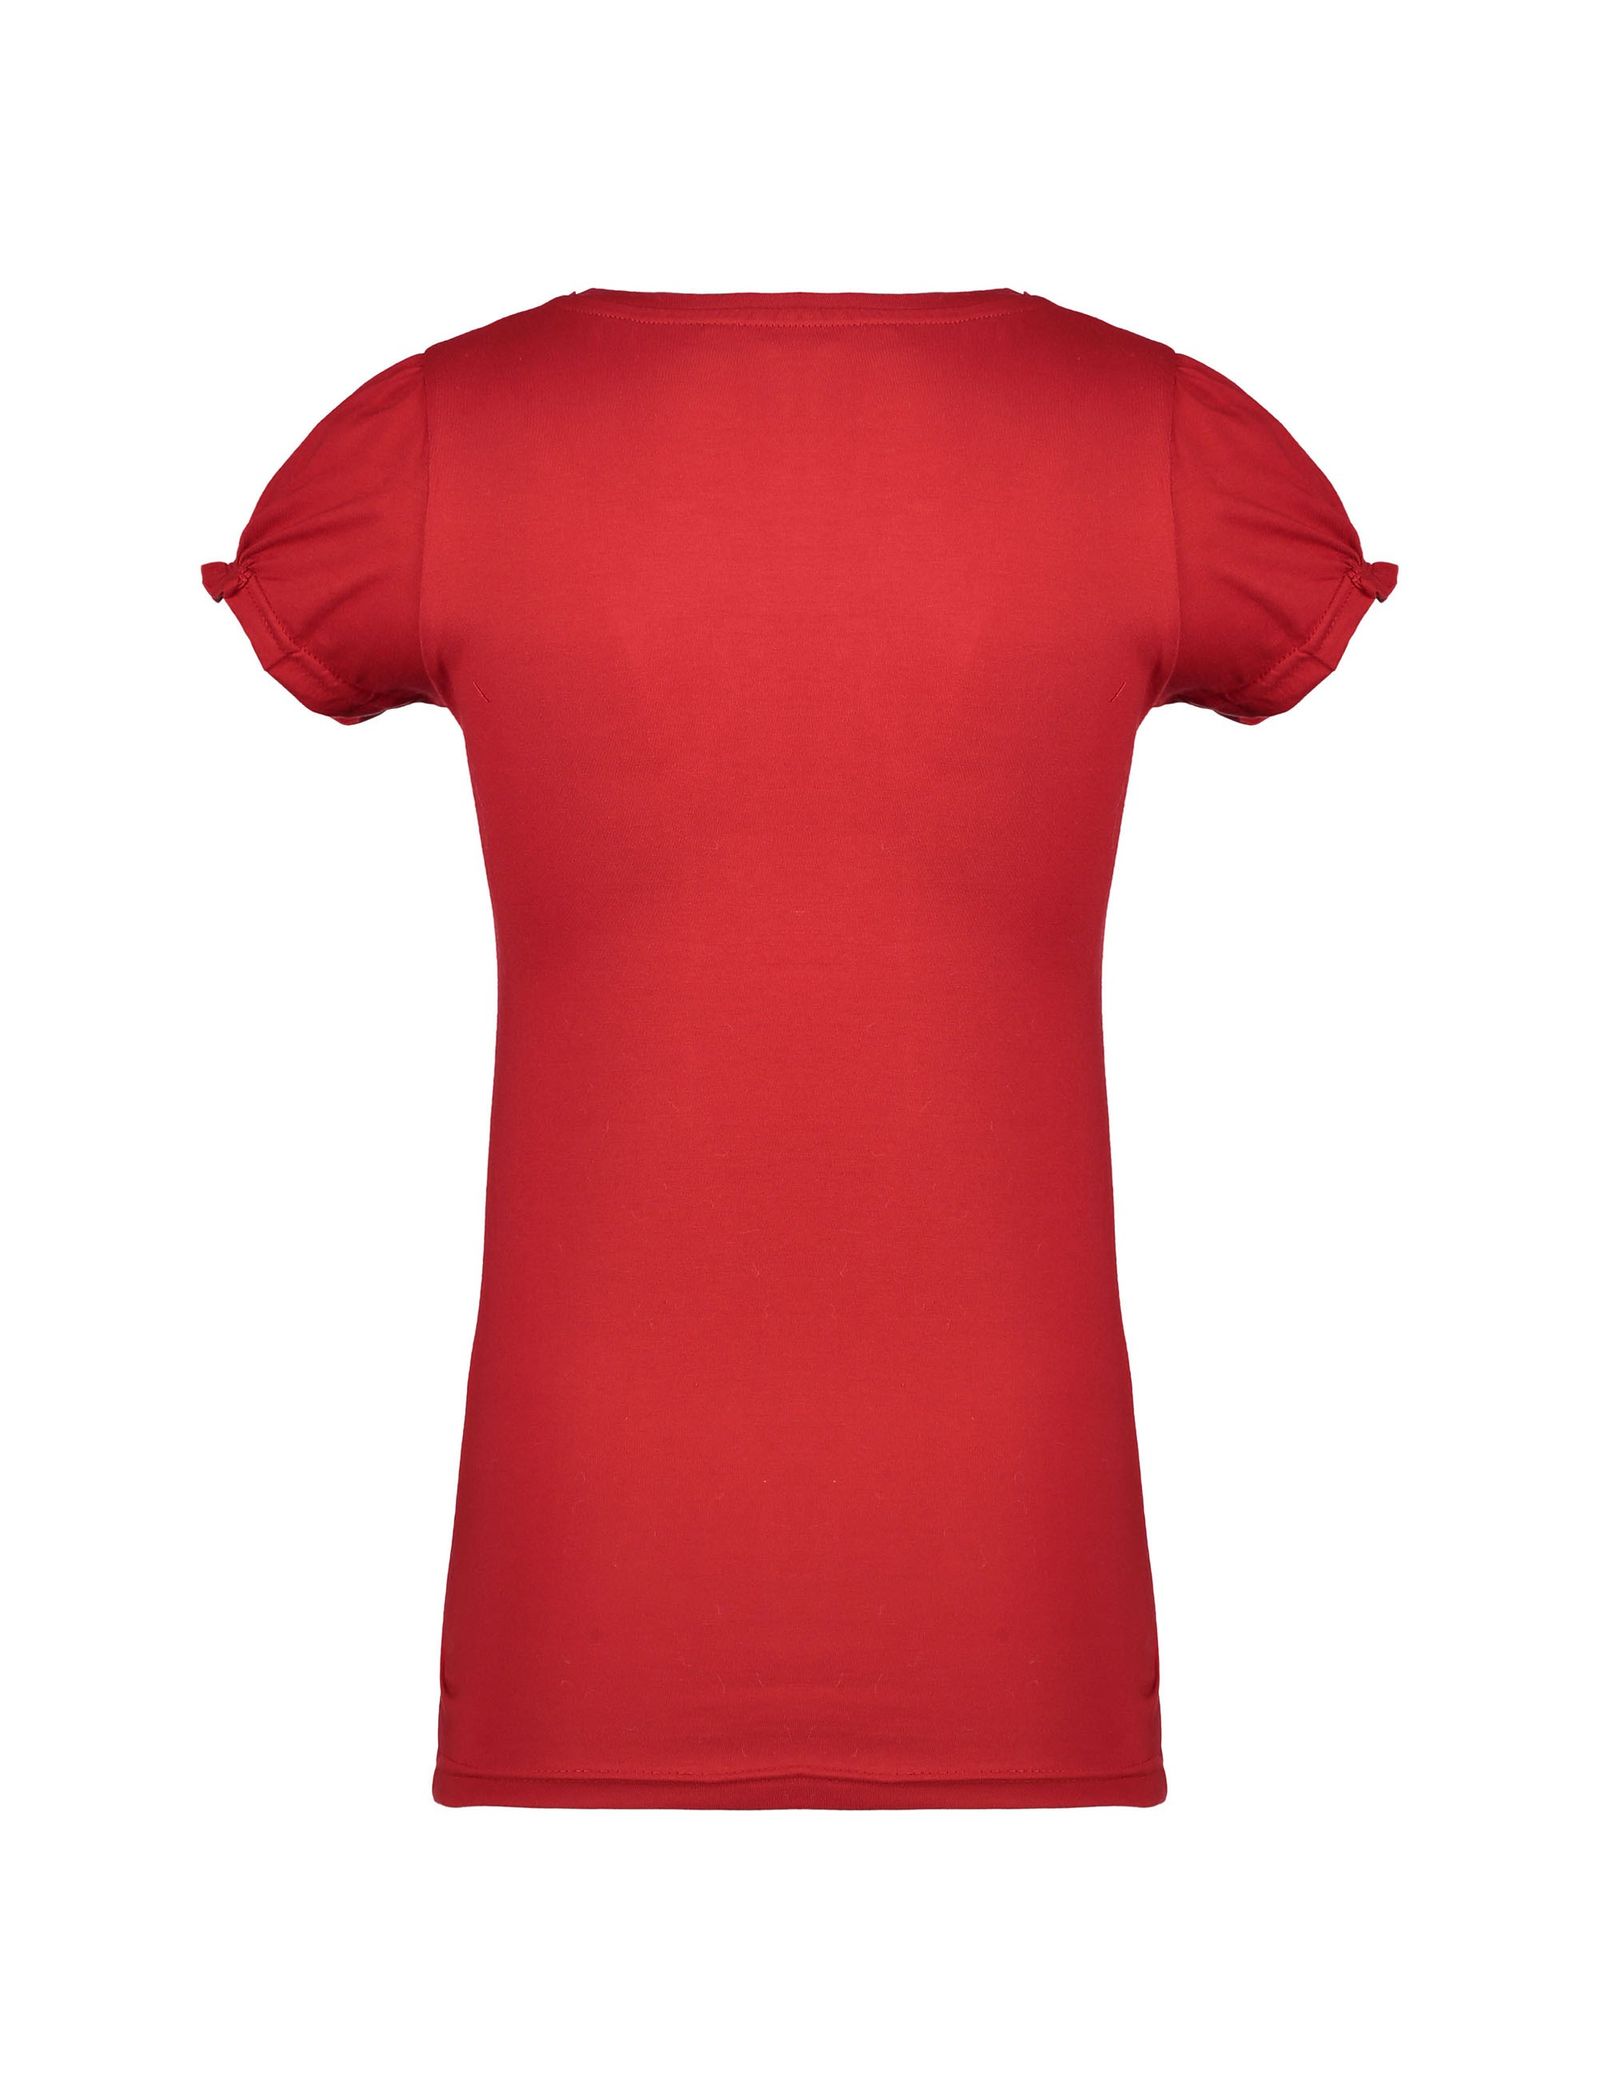 تی شرت و شلوار راحتی نخی زنانه - ناربن - قرمز و قهوه اي - 4